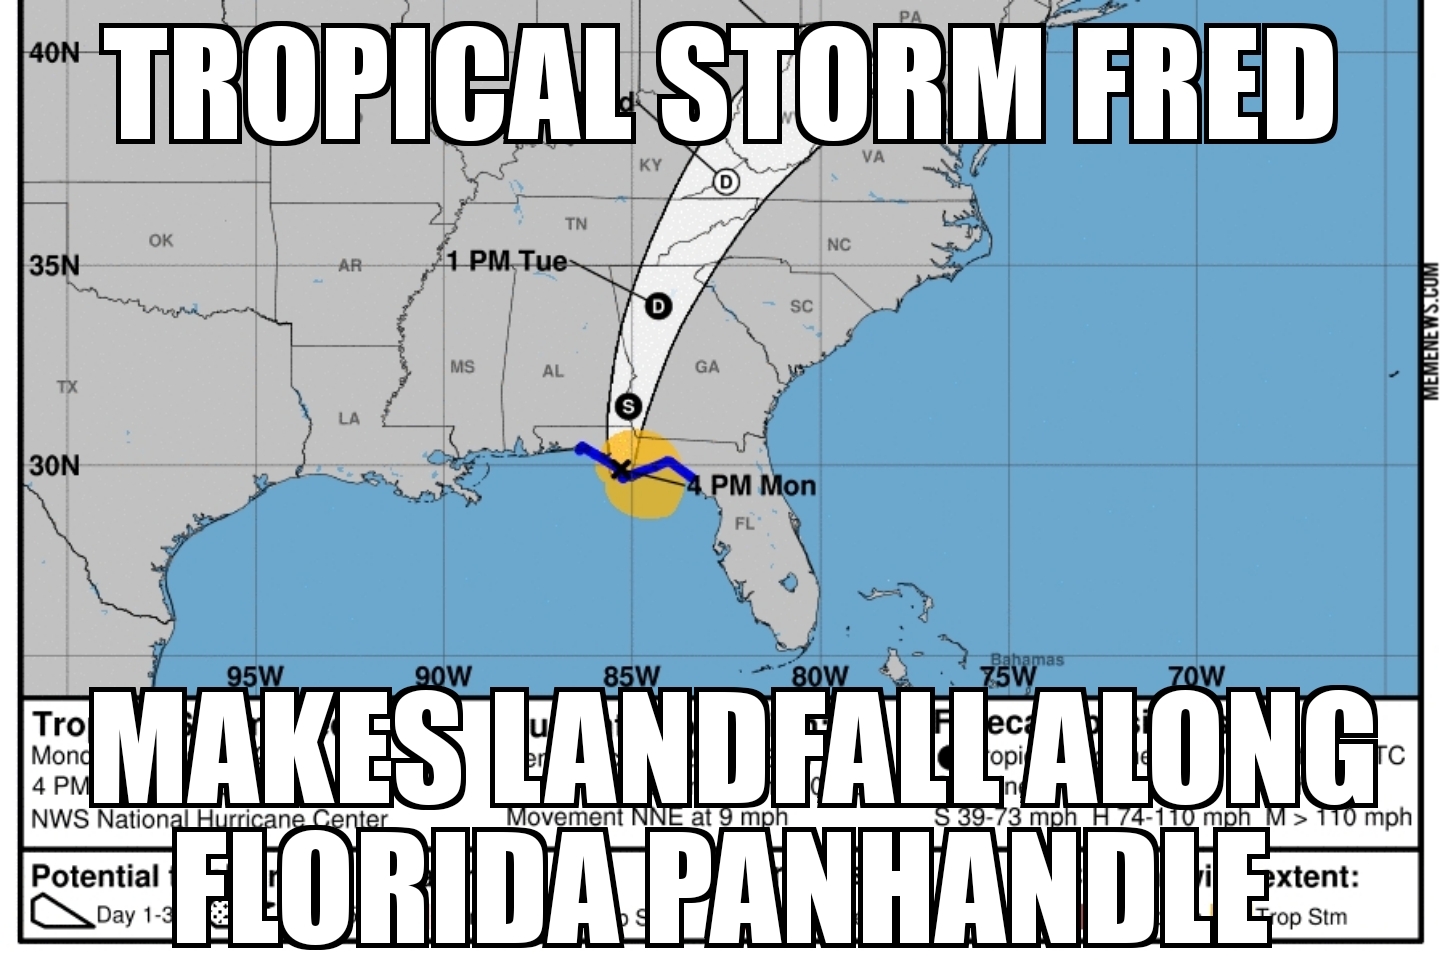 Fred makes landfall